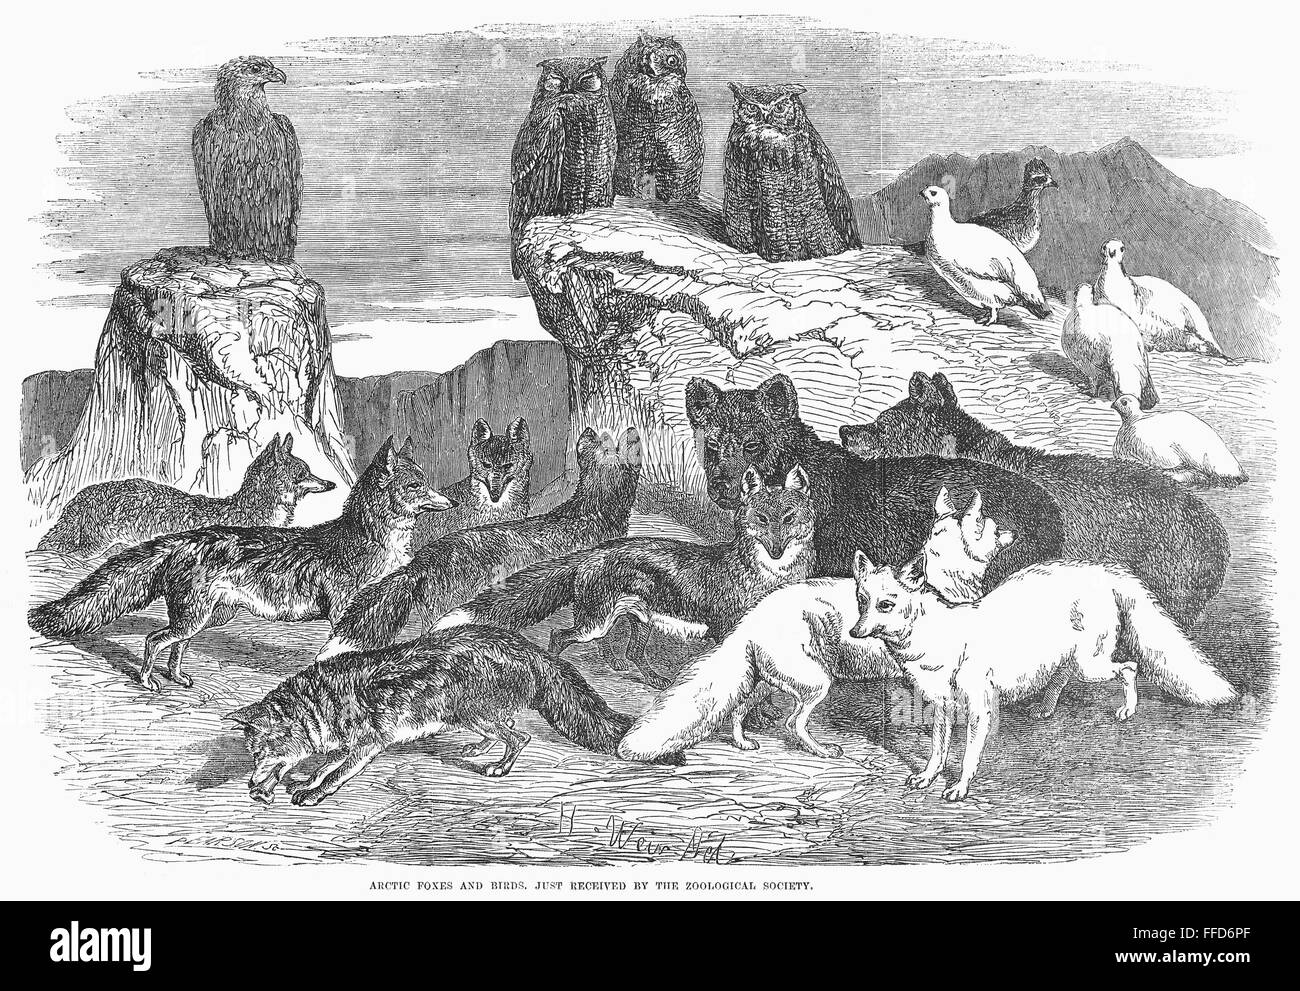 ARKTIS: FÜCHSE & VÖGEL. /nTaxidermy Beispiele für Füchse und Vögel in der Arktis auf der Zoologischen Gesellschaft London gefunden. Holzstich, 1854. Stockfoto